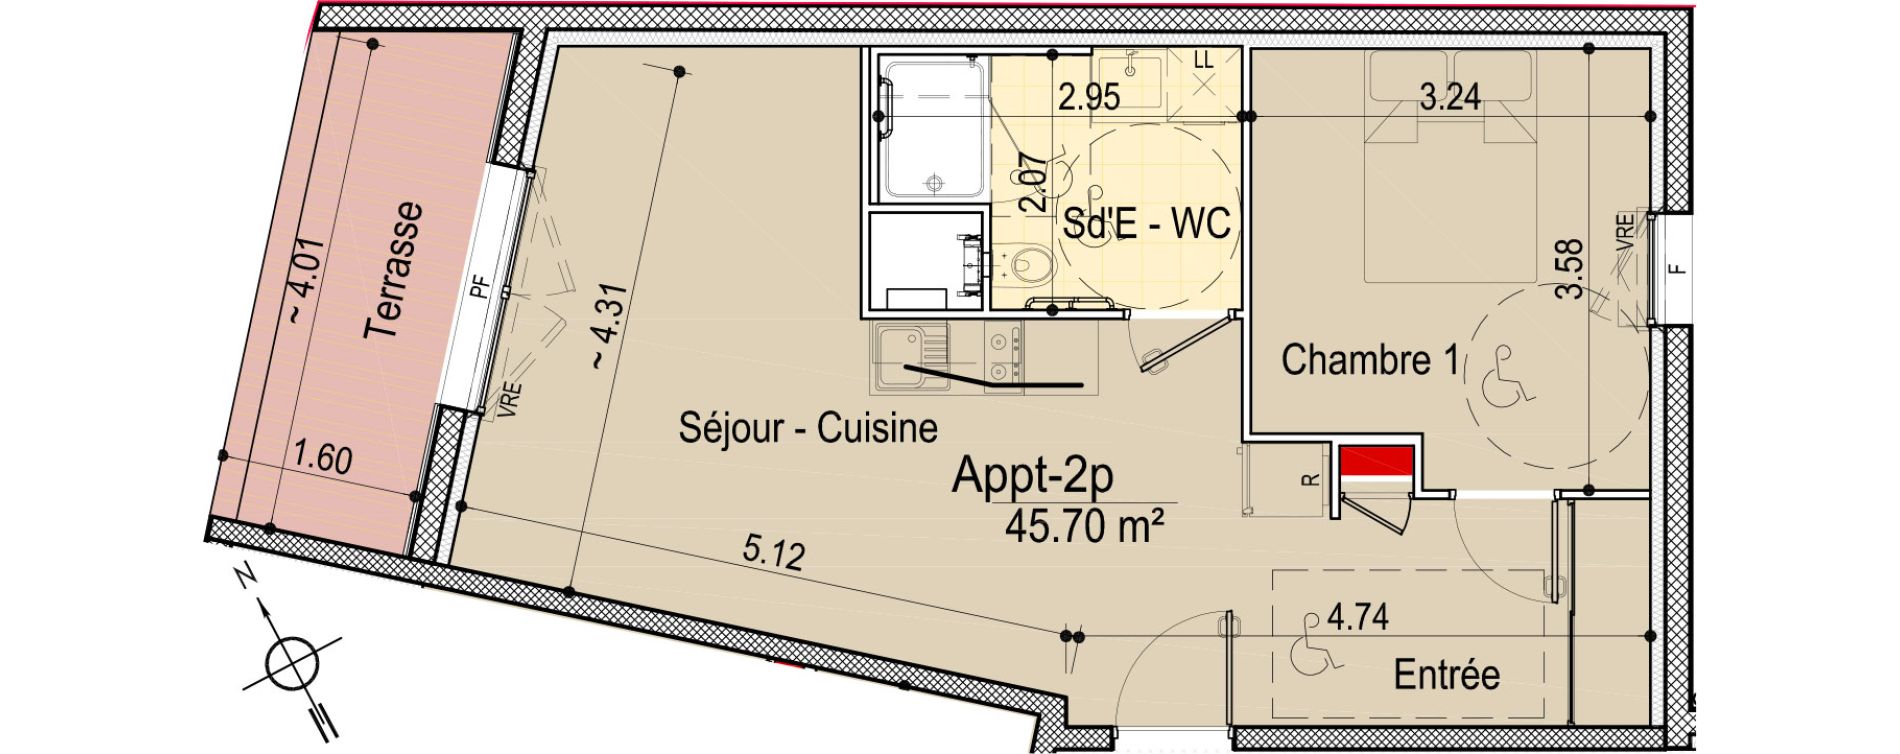 Appartement T2 bis de 45,70 m2 aux Sables-D'Olonne Le chateau d olonne